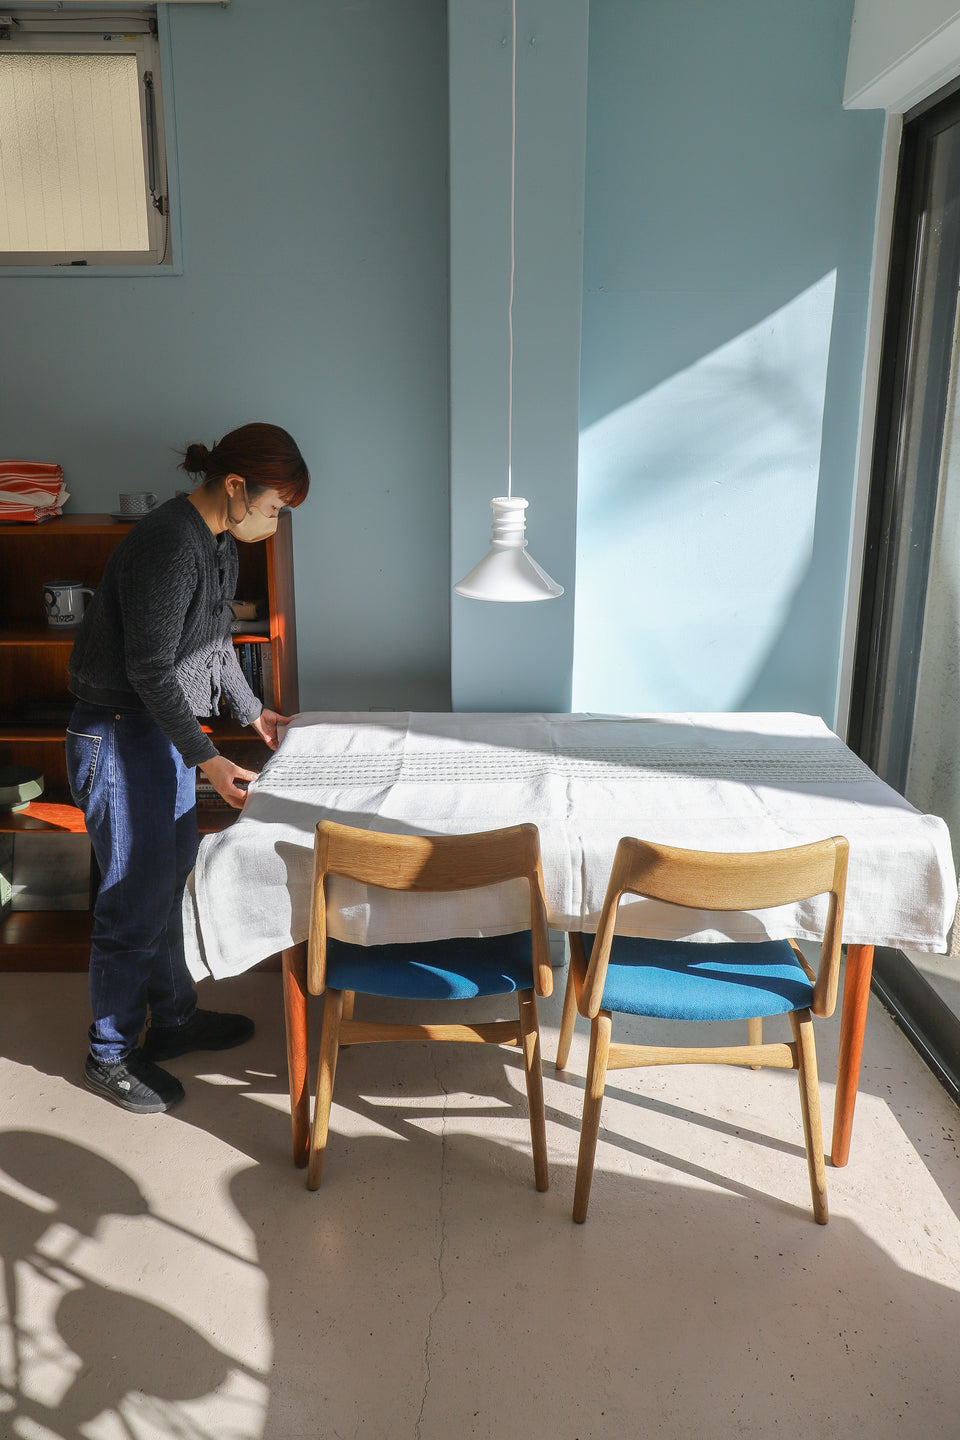 Vintage Fabric Table Cloth Scandinavian Interior/ヴィンテージ ファブリック カーテン テーブルクロス 北欧インテリア